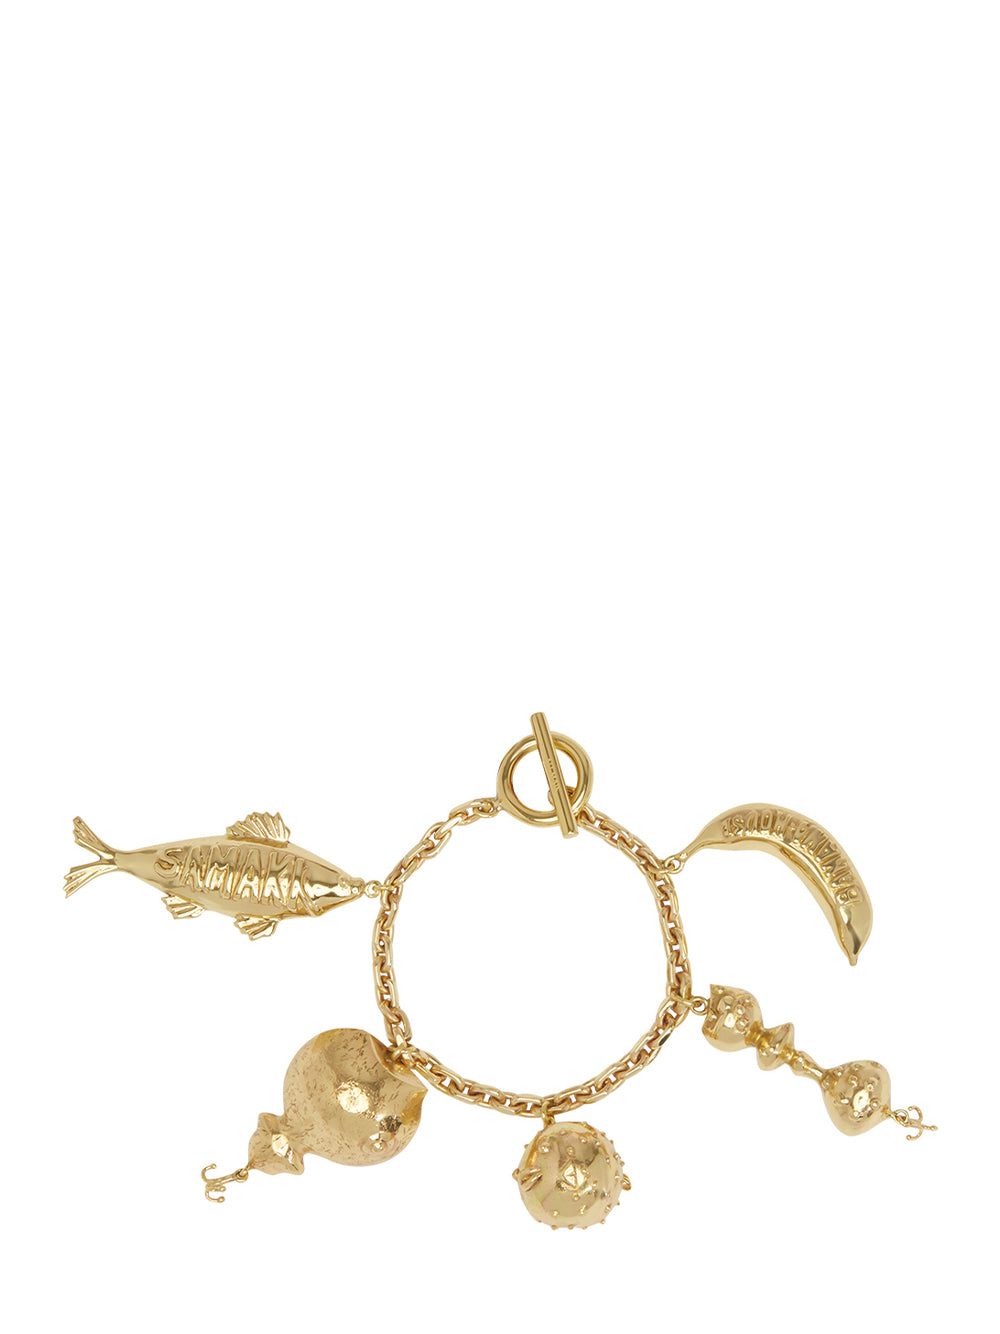 Banana House Charm Bracelet (Gold)